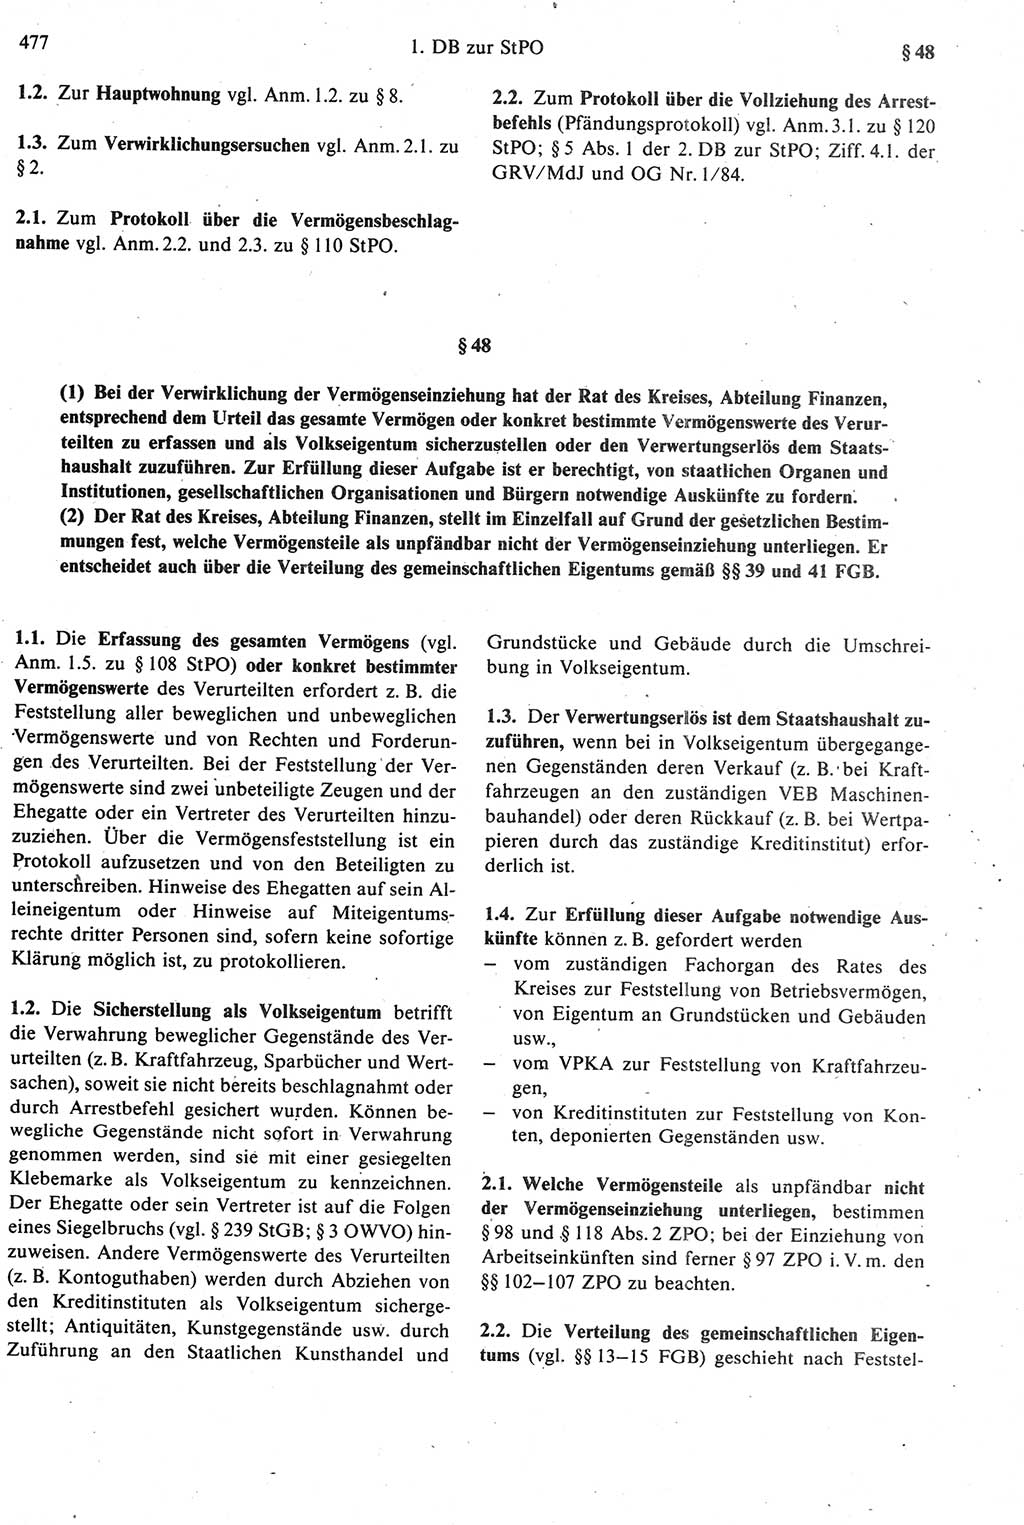 Strafprozeßrecht der DDR [Deutsche Demokratische Republik], Kommentar zur Strafprozeßordnung (StPO) 1987, Seite 477 (Strafprozeßr. DDR Komm. StPO 1987, S. 477)